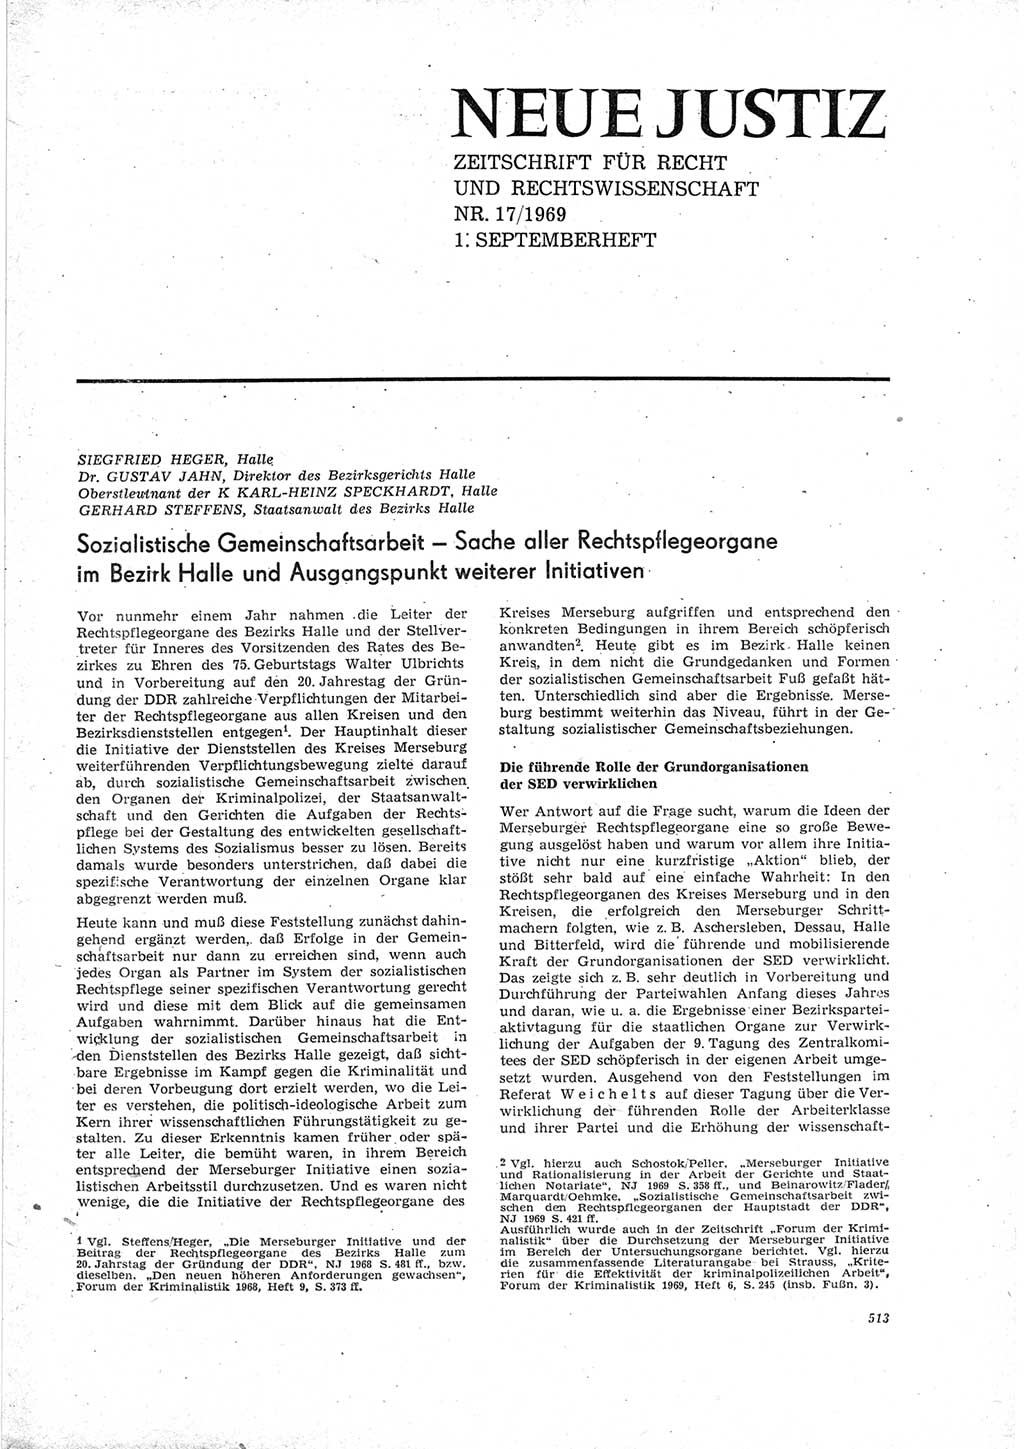 Neue Justiz (NJ), Zeitschrift für Recht und Rechtswissenschaft [Deutsche Demokratische Republik (DDR)], 23. Jahrgang 1969, Seite 513 (NJ DDR 1969, S. 513)